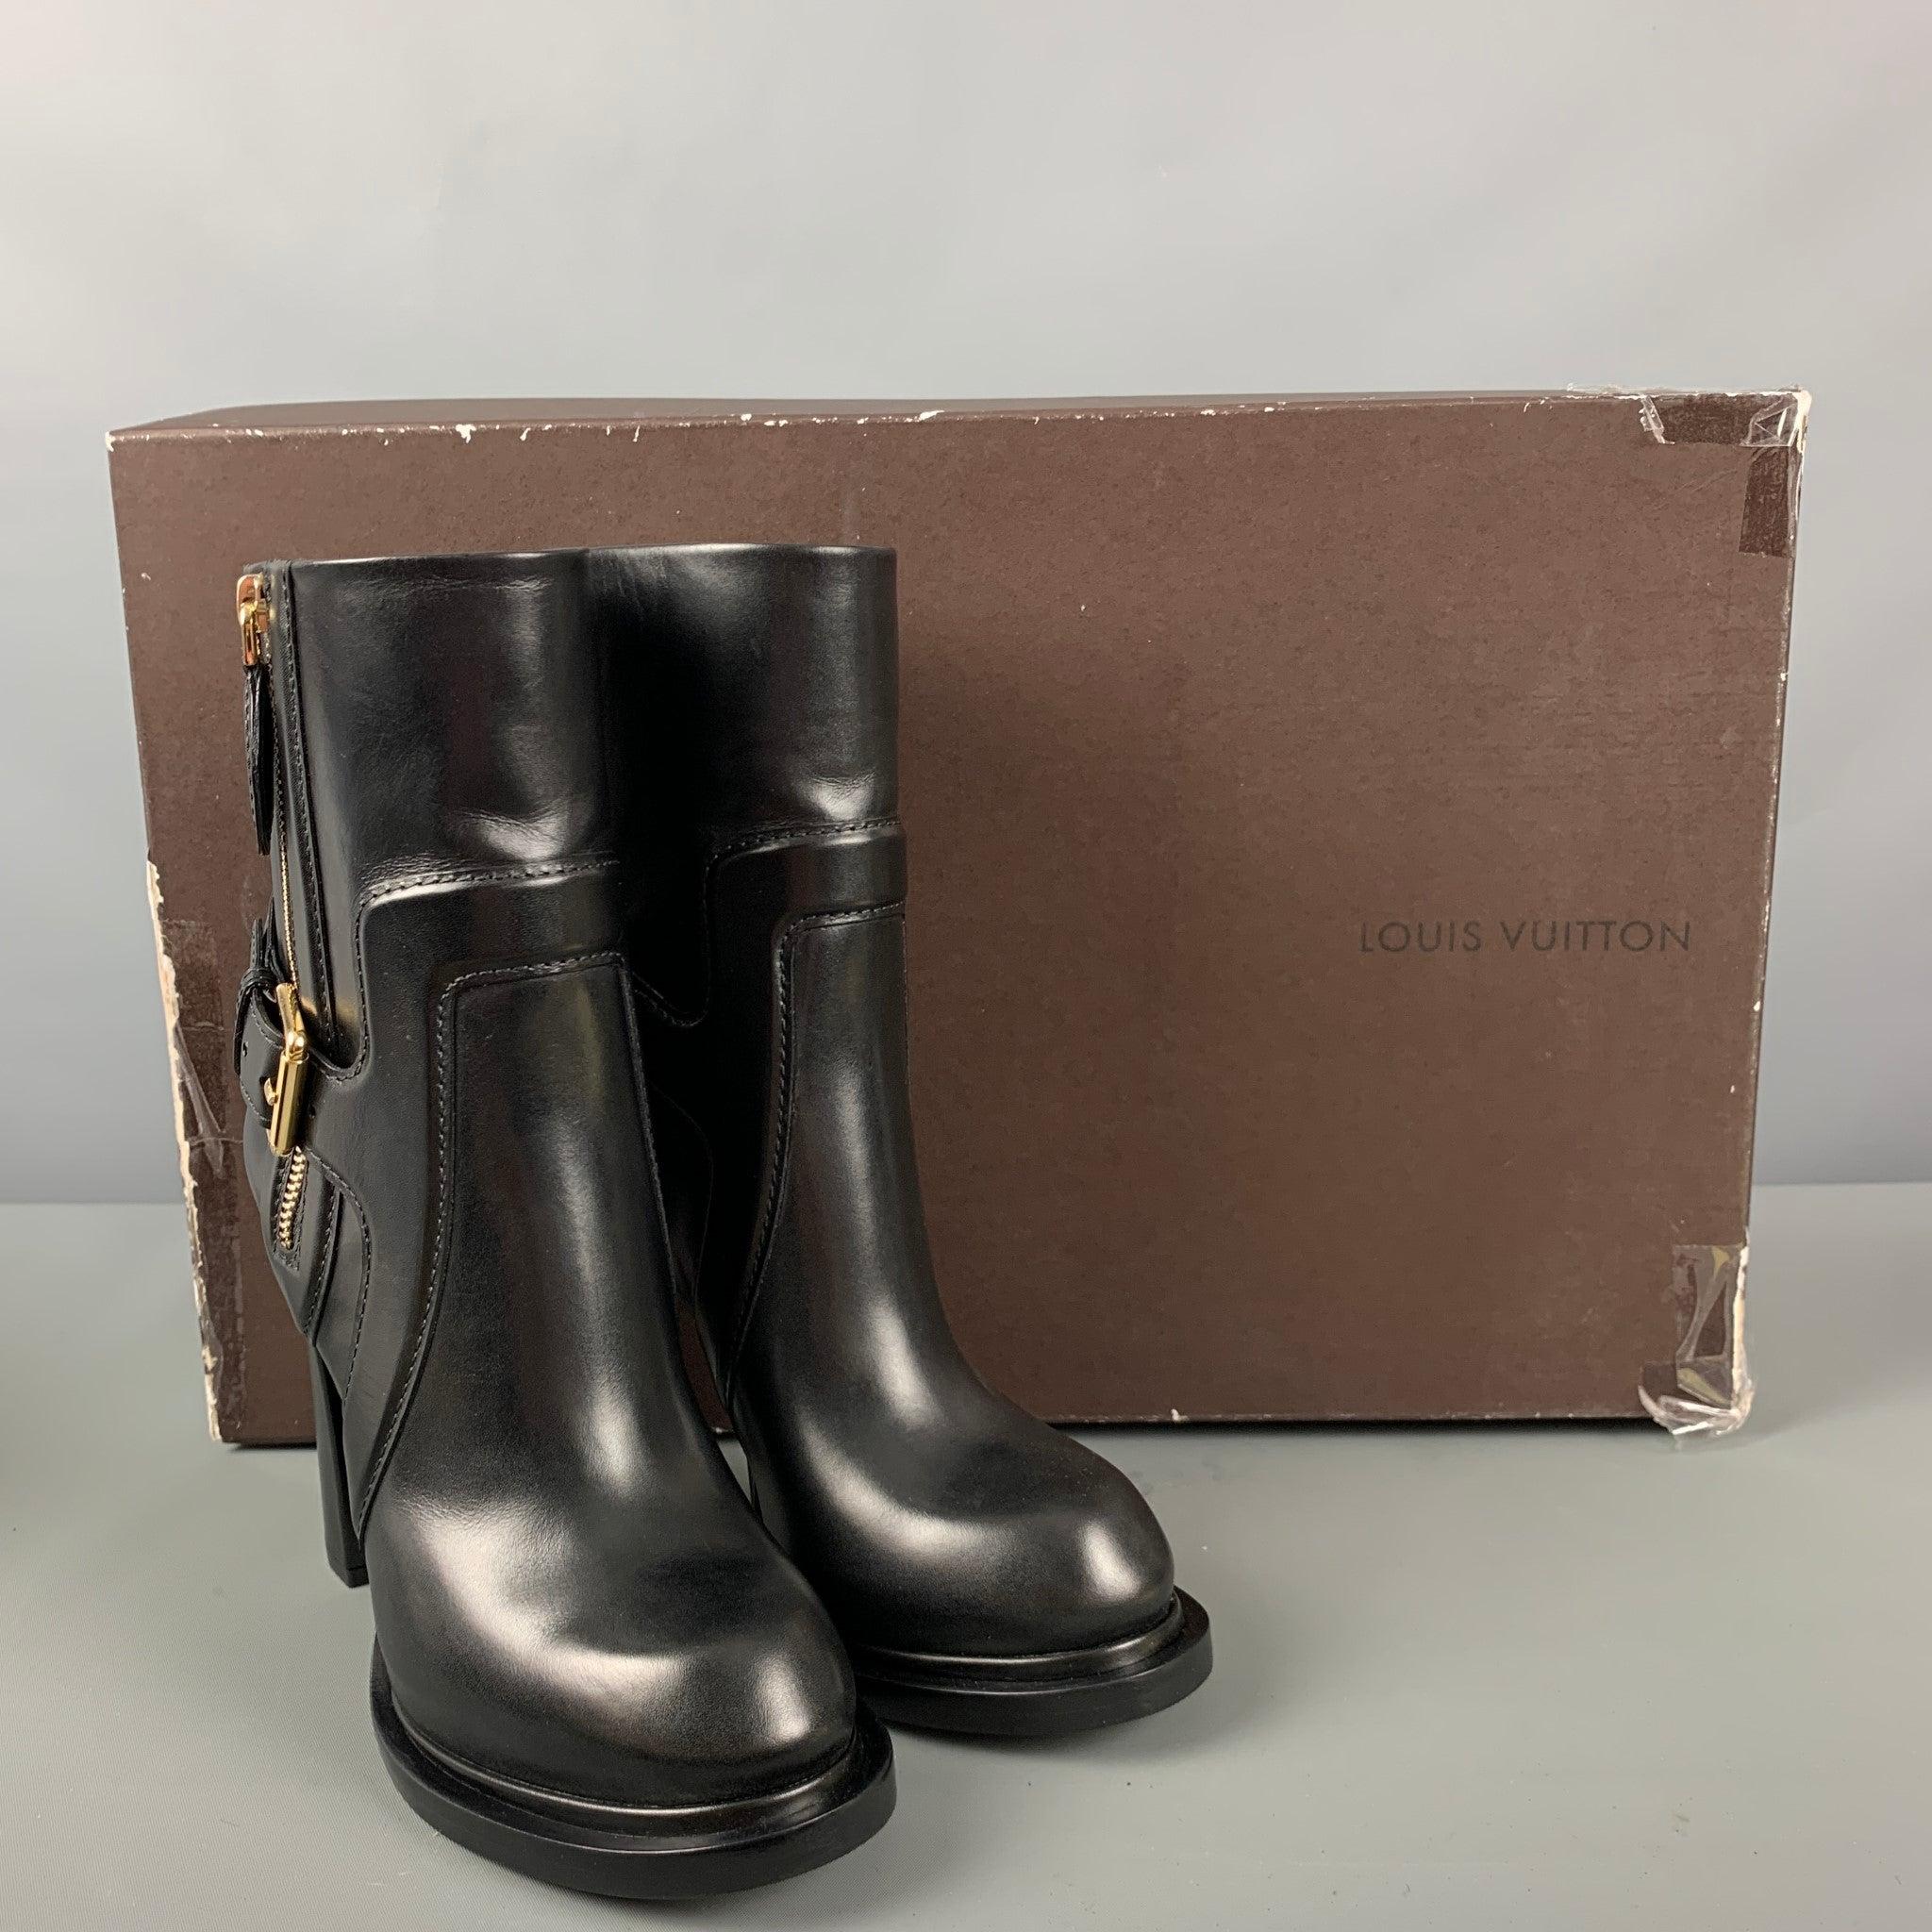 LOUIS VUITTON Size 7 Black Leather Boots 5